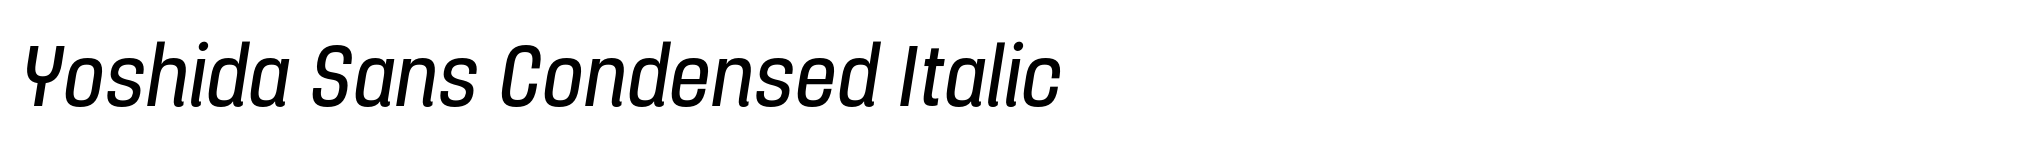 Yoshida Sans Condensed Italic image